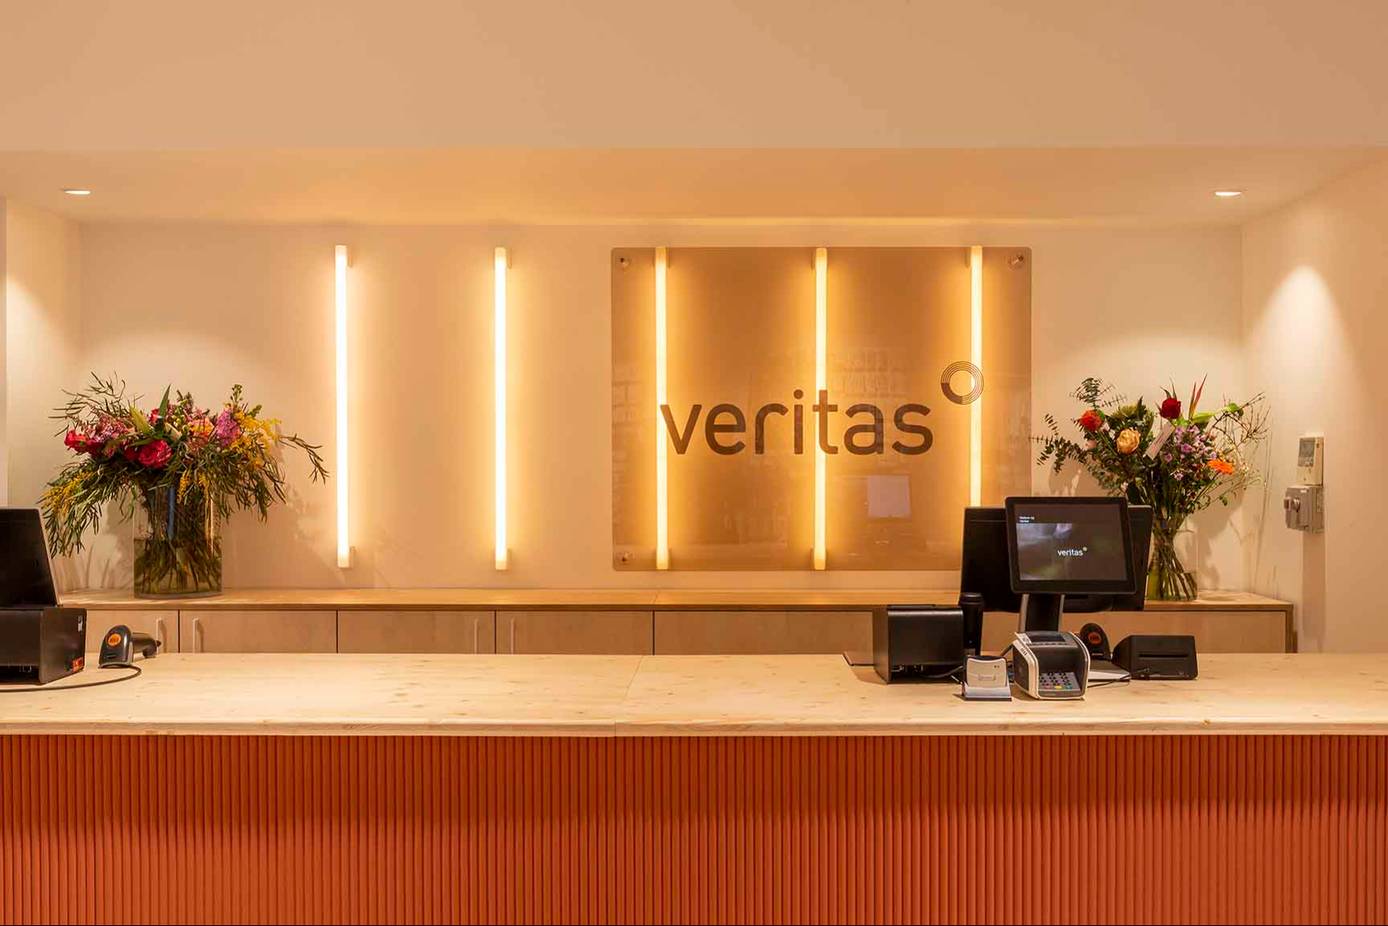 formaat Gewond raken Roei uit Expansie: Veritas opent eerste winkel in Nederland